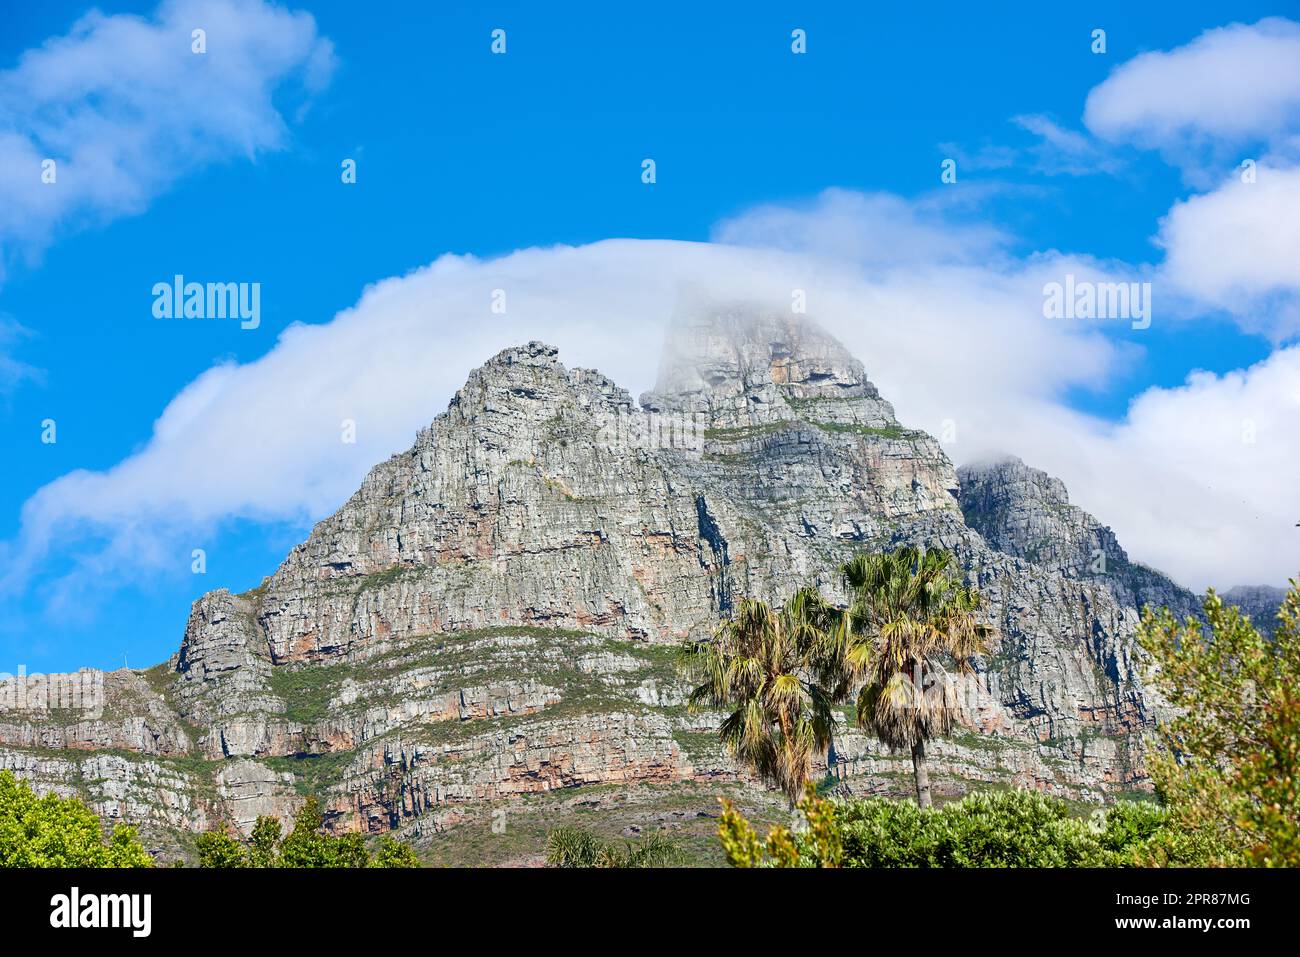 Lions Head Berg mit wolkenblauem Himmel Kopierraum. Wunderschöner Blick auf einen felsigen Berggipfel bedeckt mit üppiger grüner Vegetation an einem beliebten Reiseziel in Kapstadt, Südafrika Stockfoto